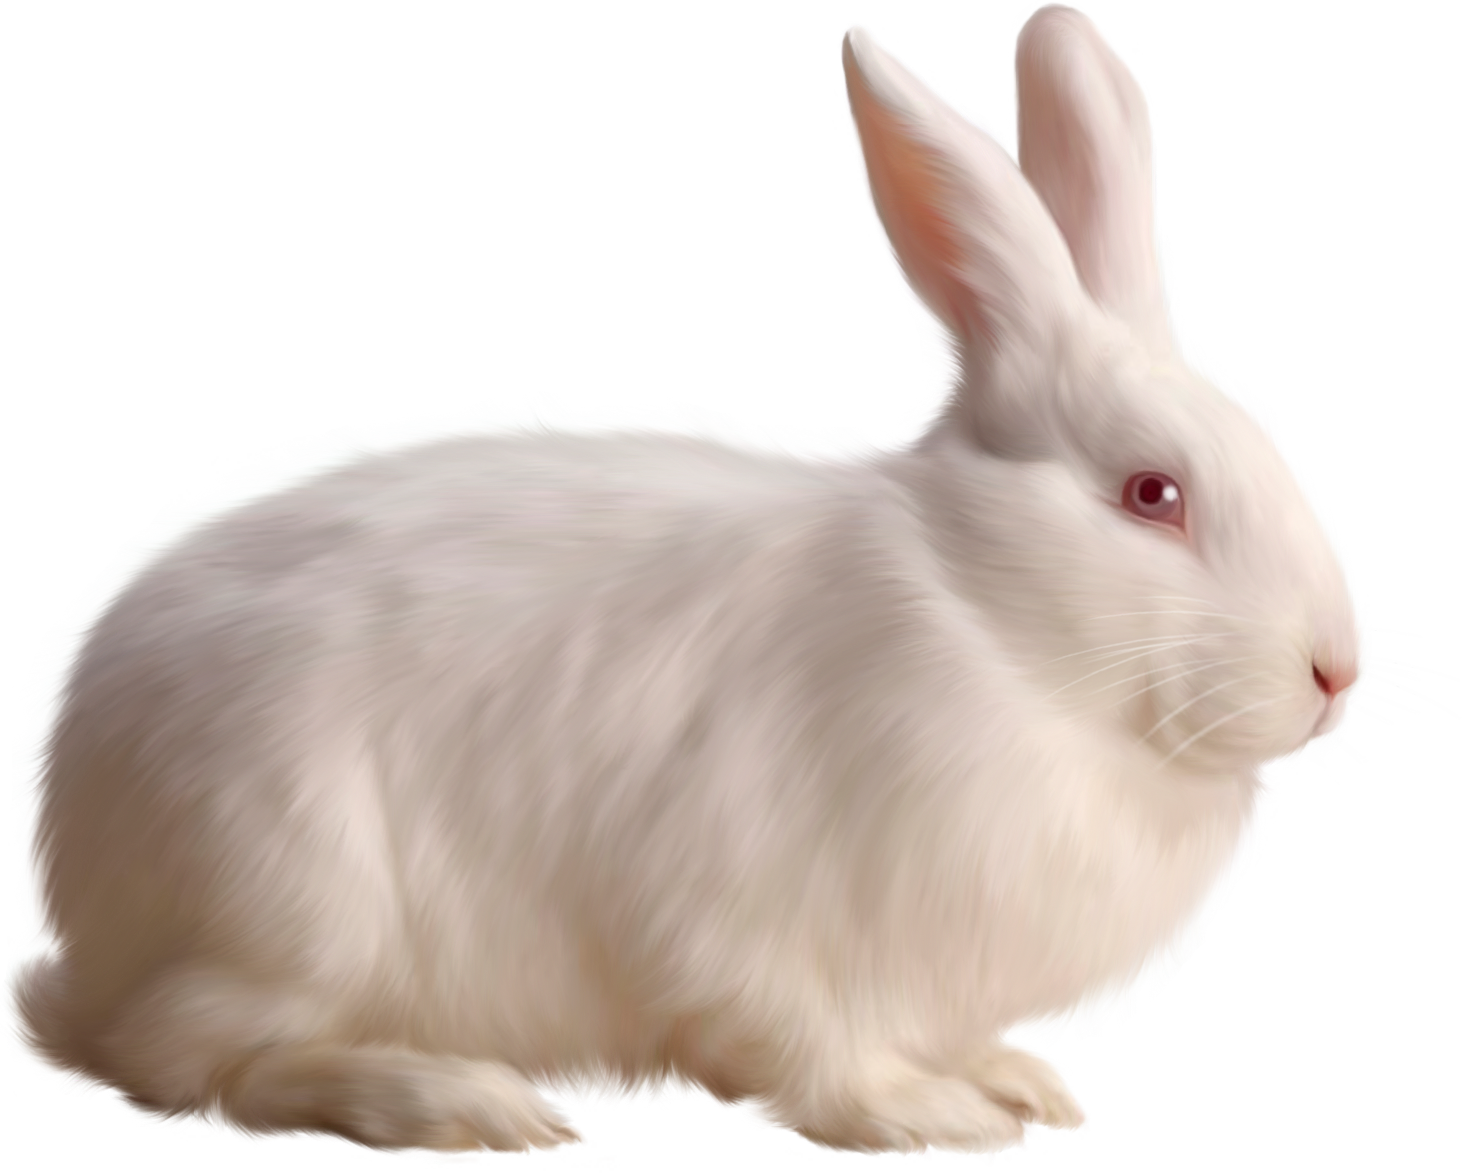 Gray rabbit PNG image